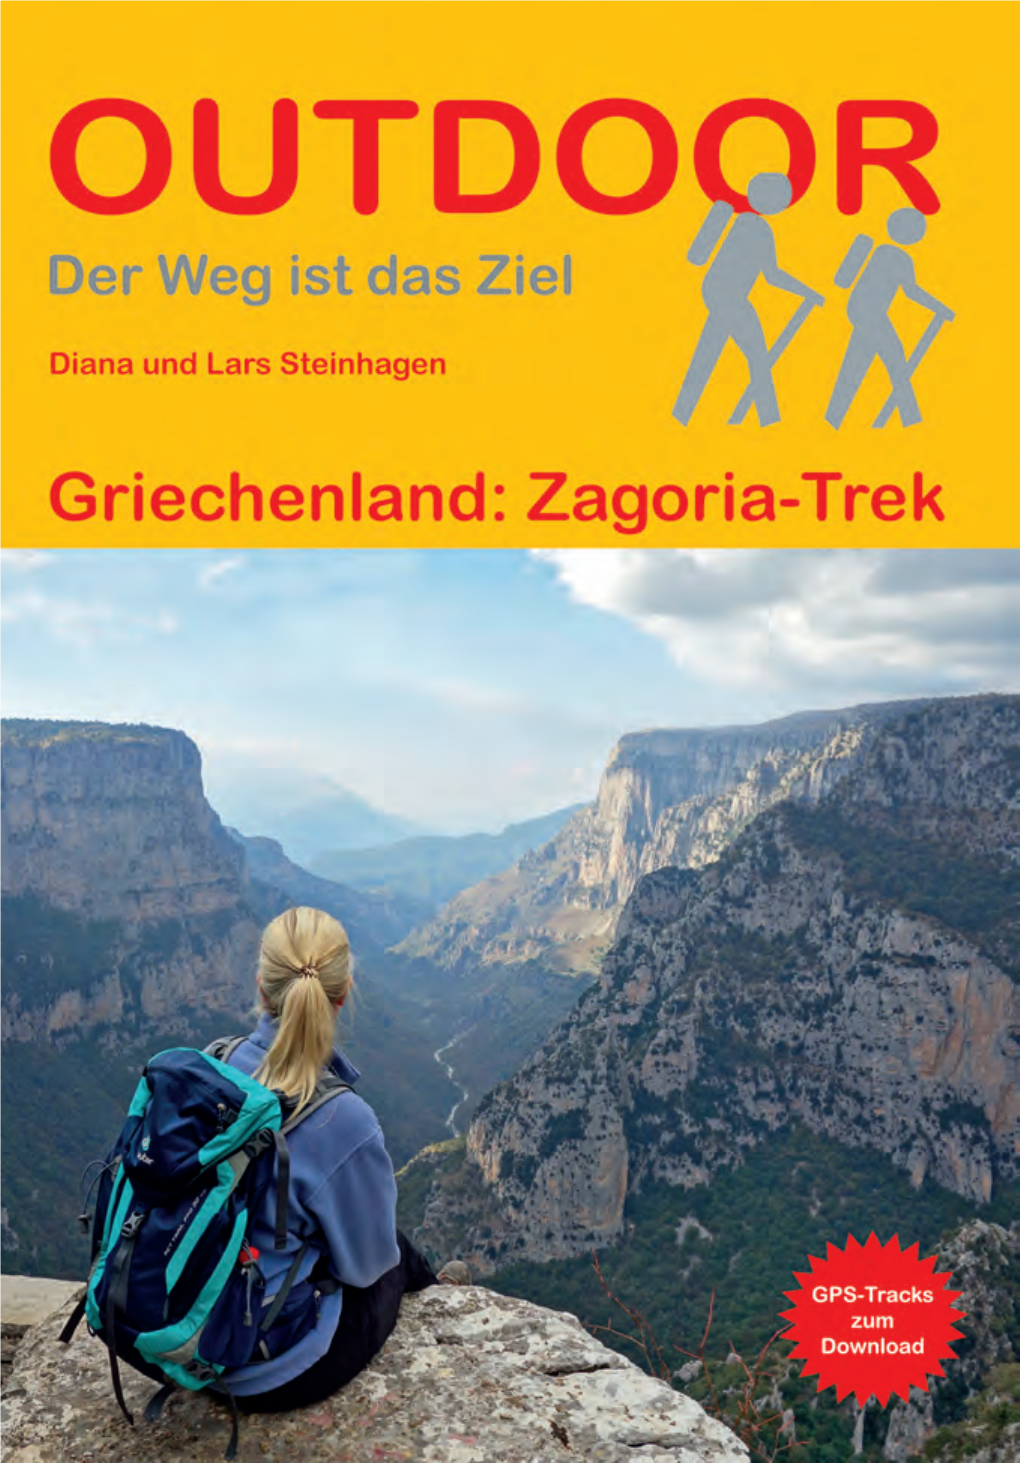 Der Zagoria-Trek in 7 Etappen